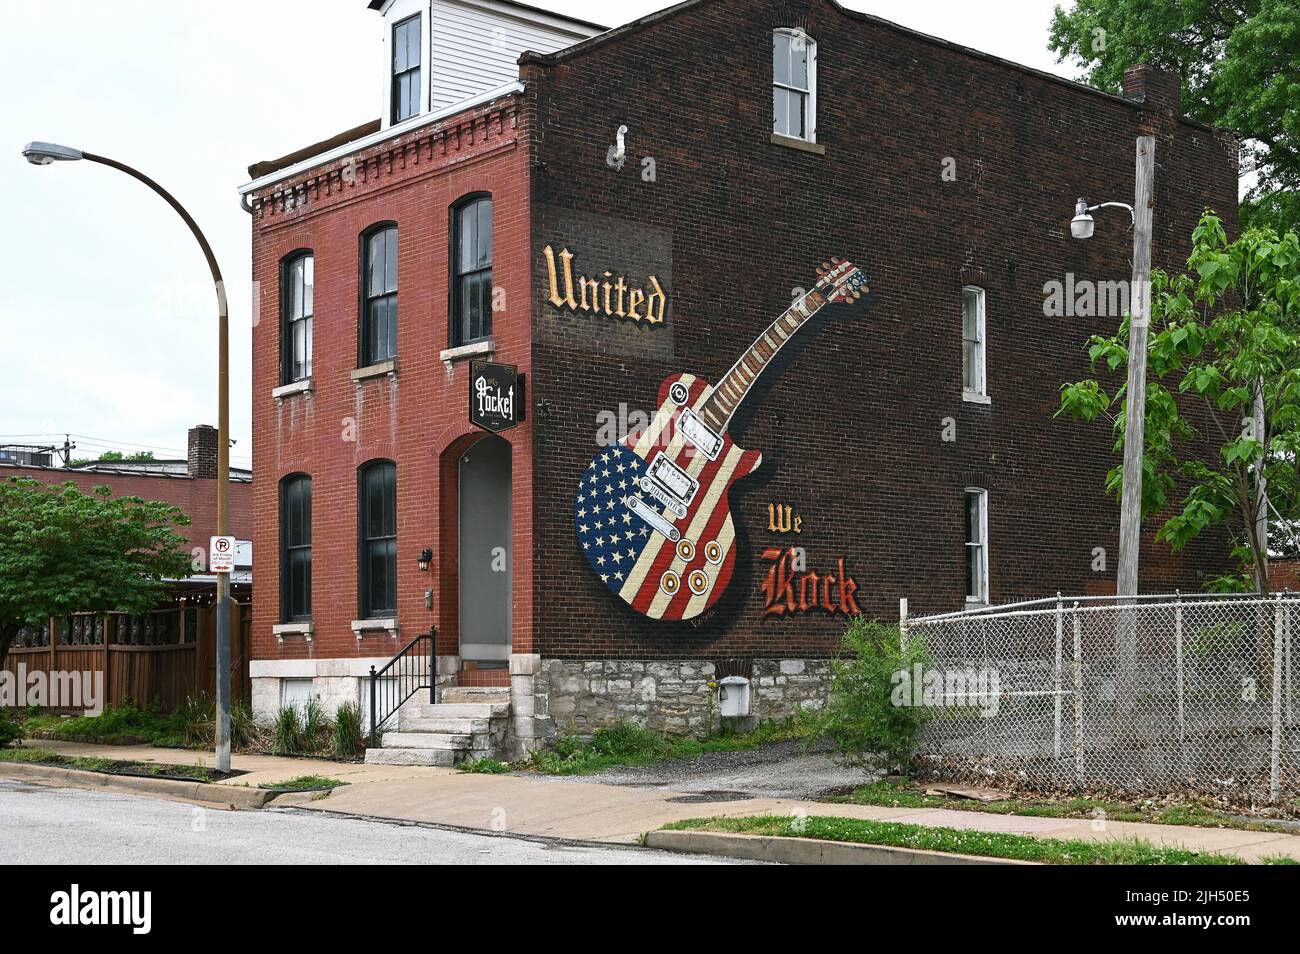 United We Rock WandgemŠlde, St. Louis, Missouri, Vereinigte Staaten von Amerika Foto Stock